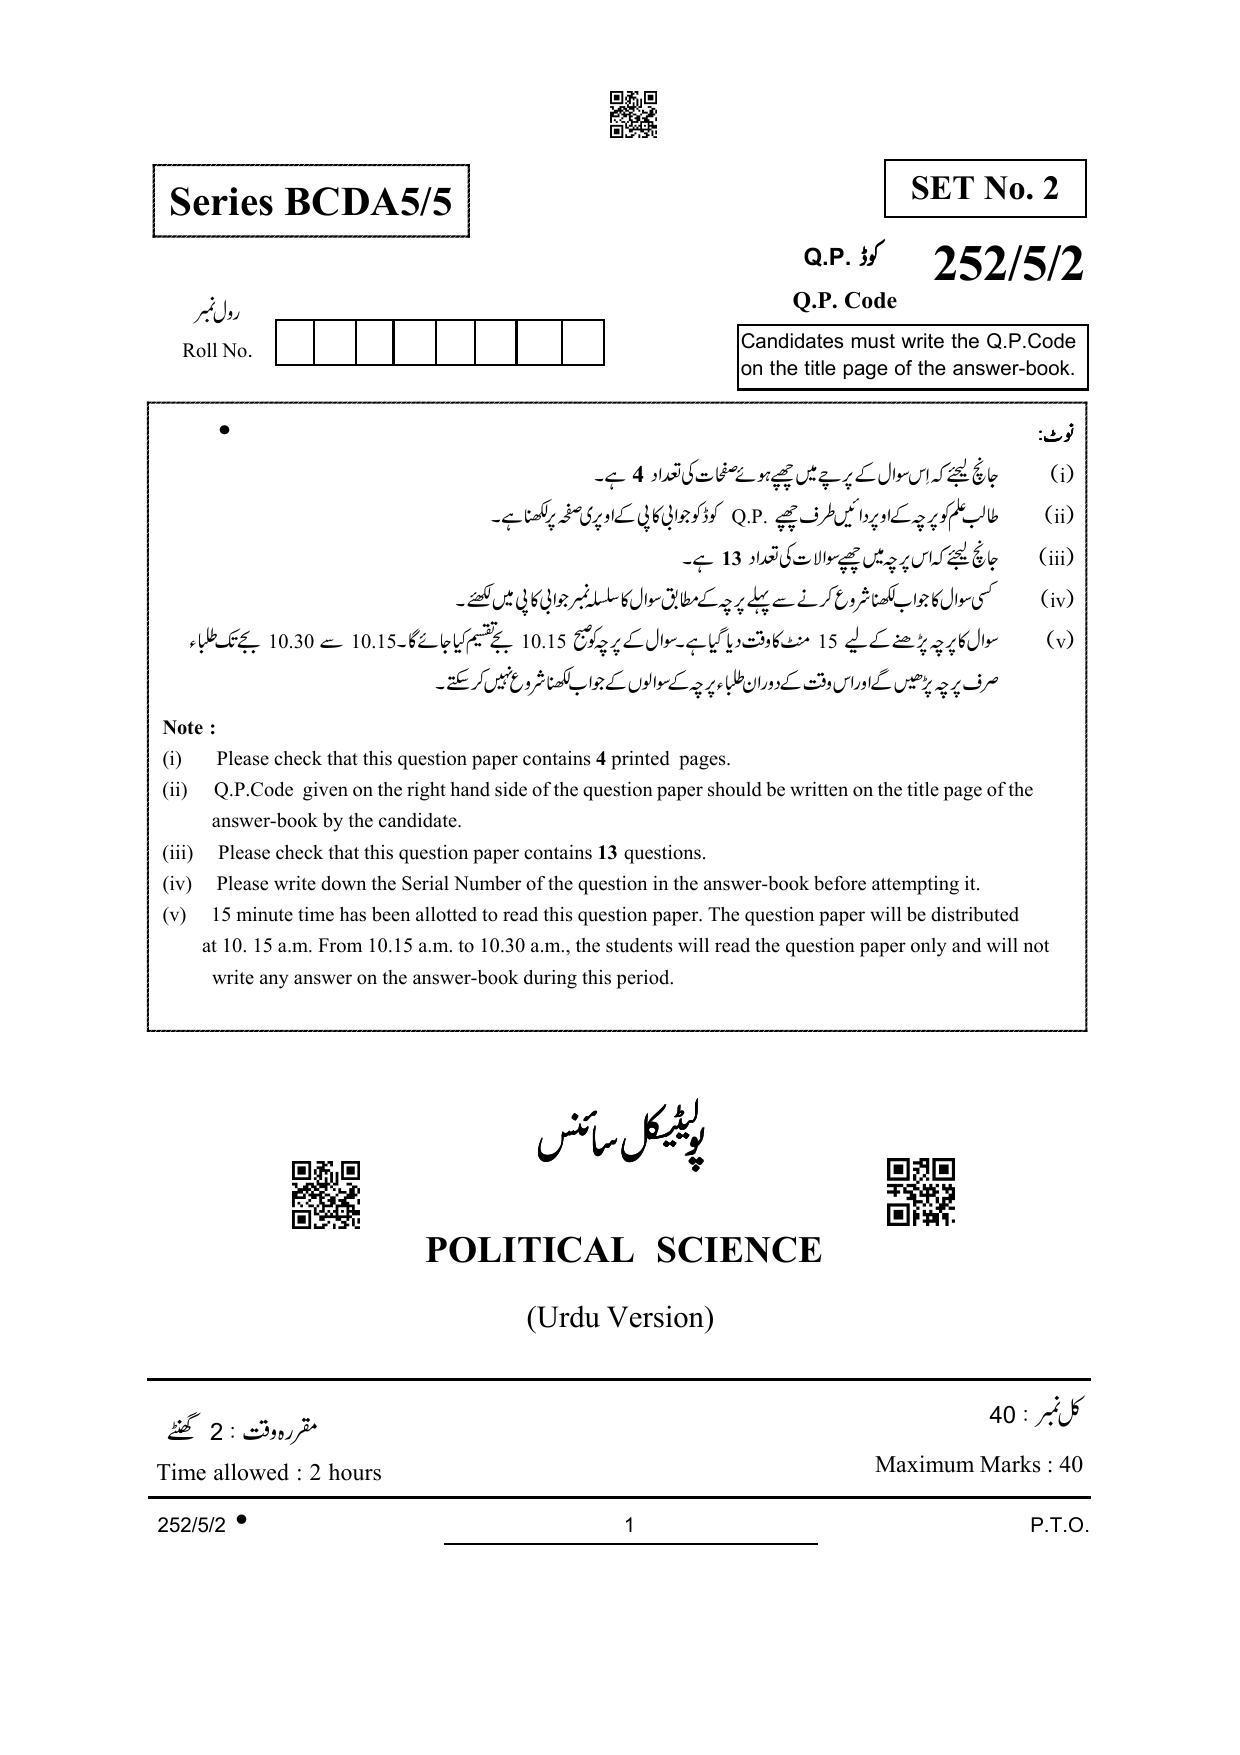 CBSE Class 12 252-5-2 Political Science Urdu Version 2022 Question Paper - Page 1